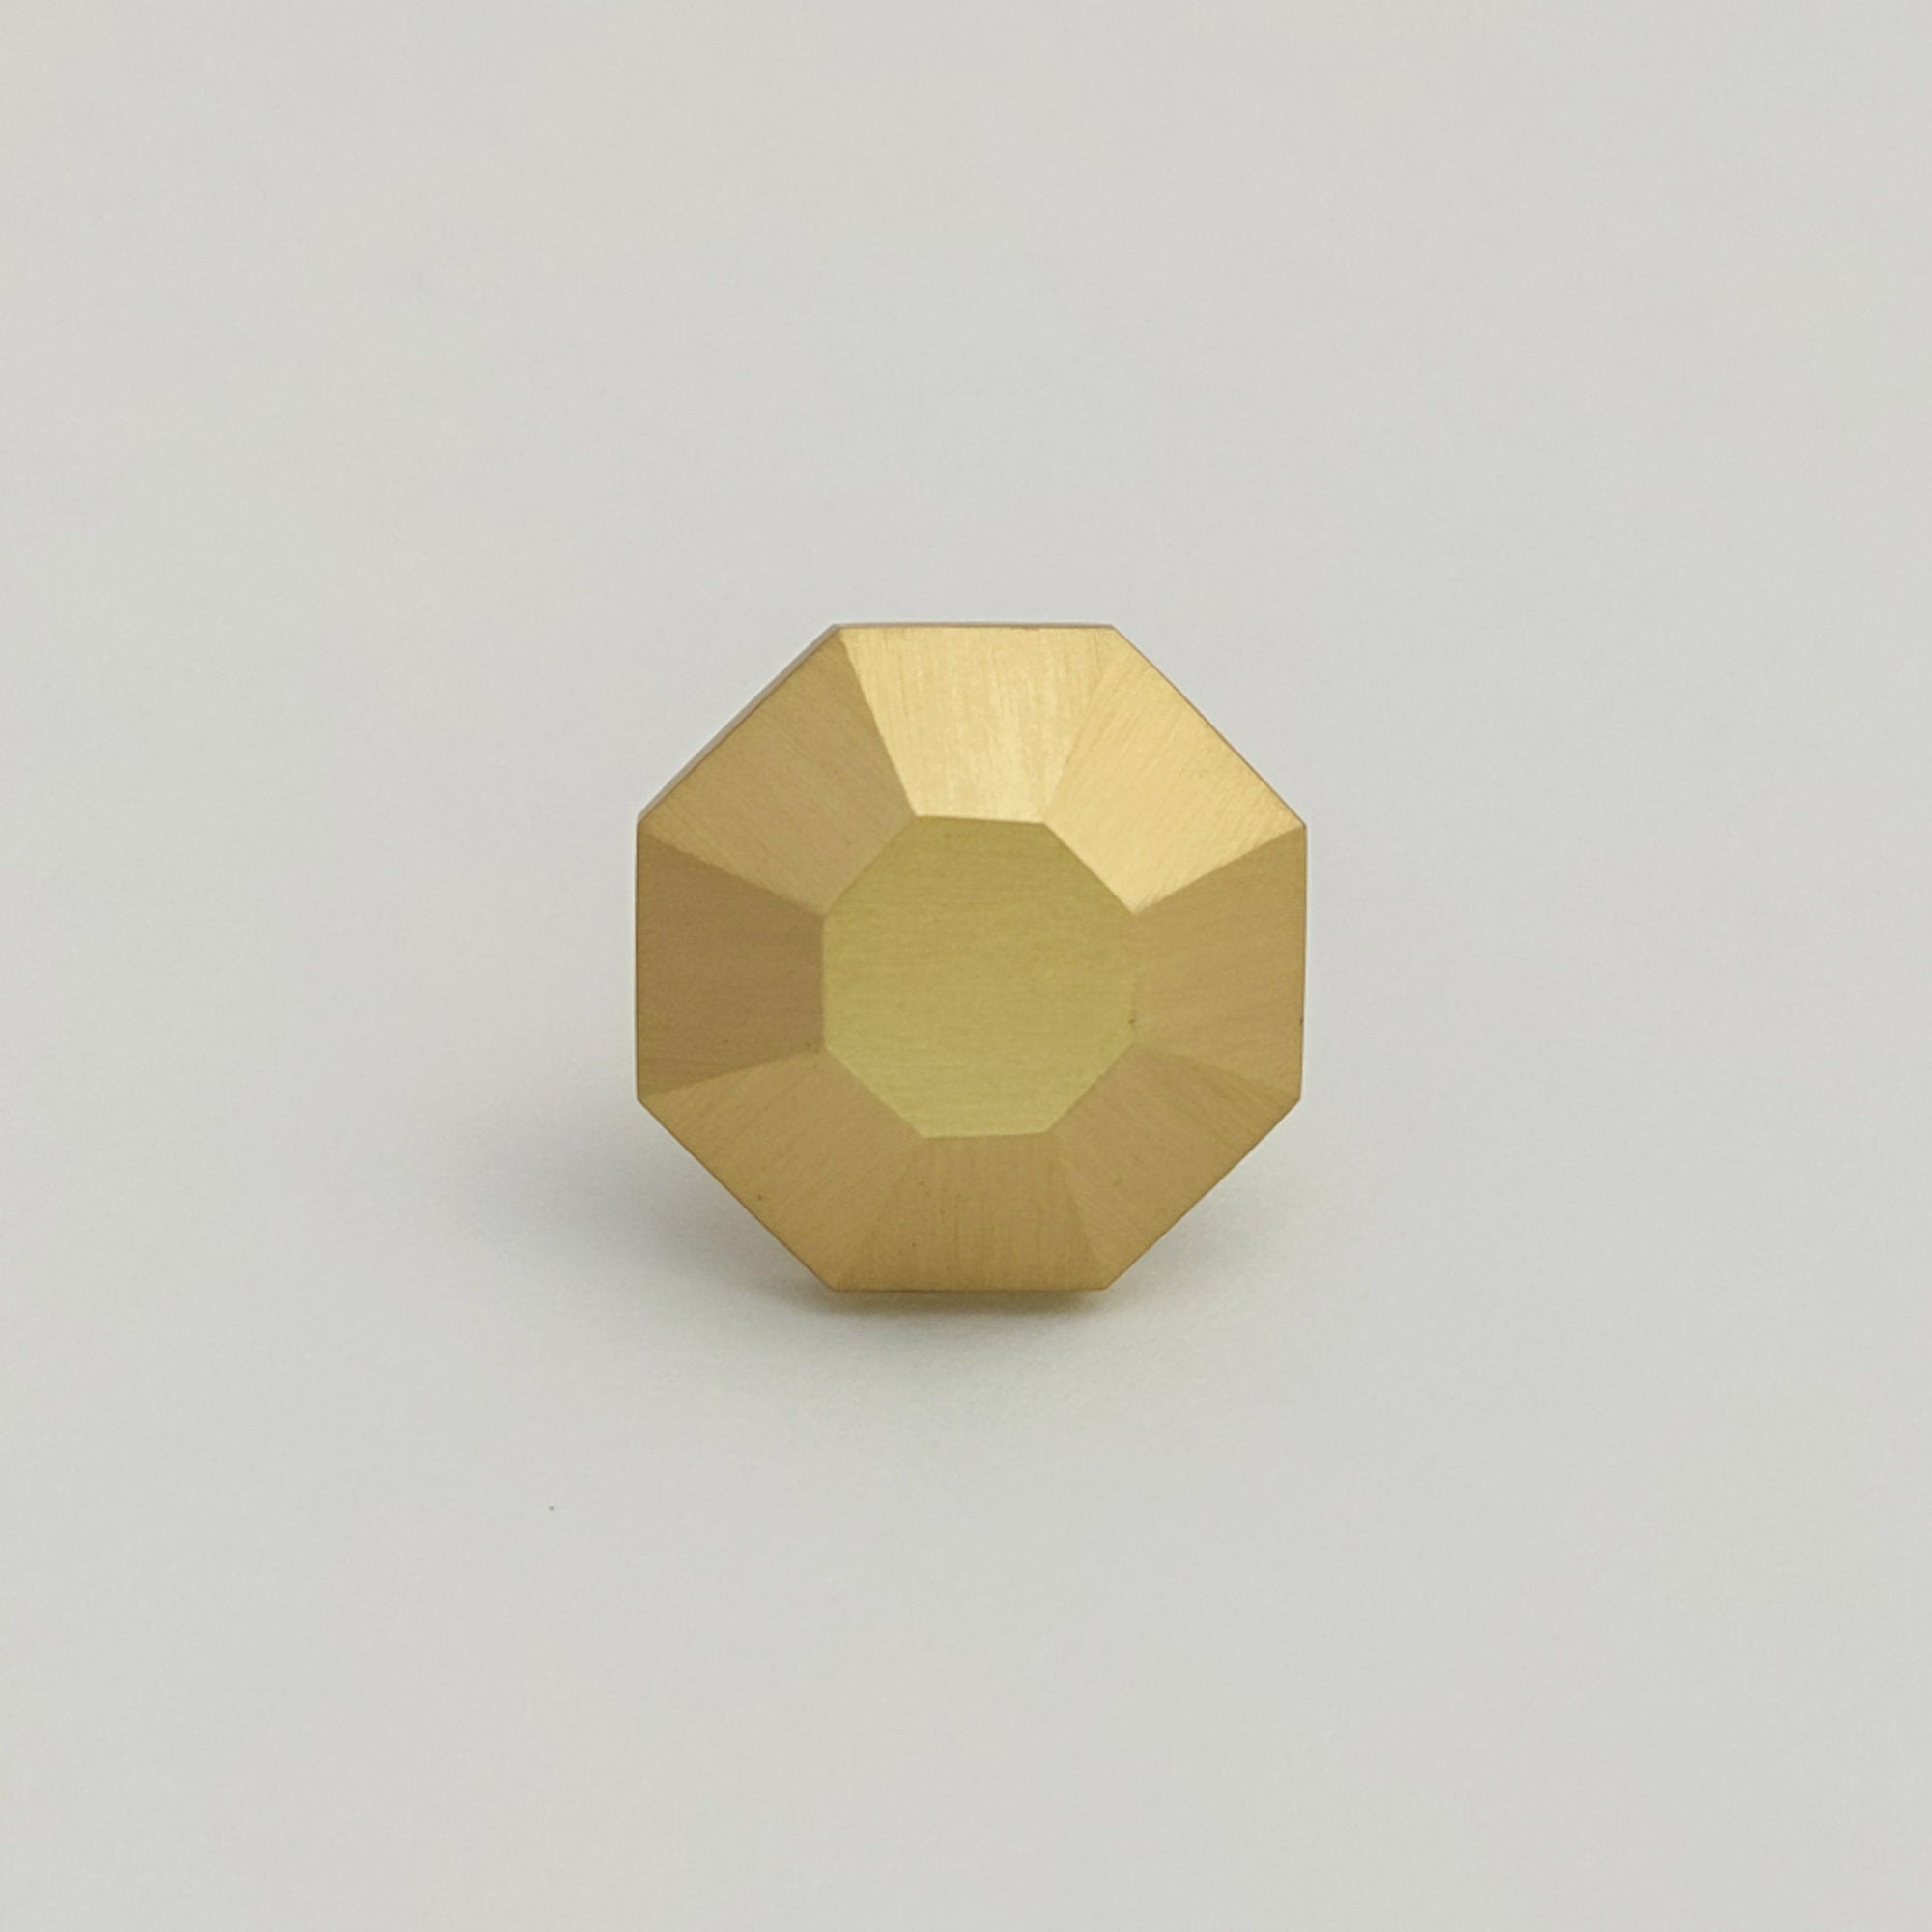 Gold Brushed Brass copper Hexagon Metallic metal Drawer Knob